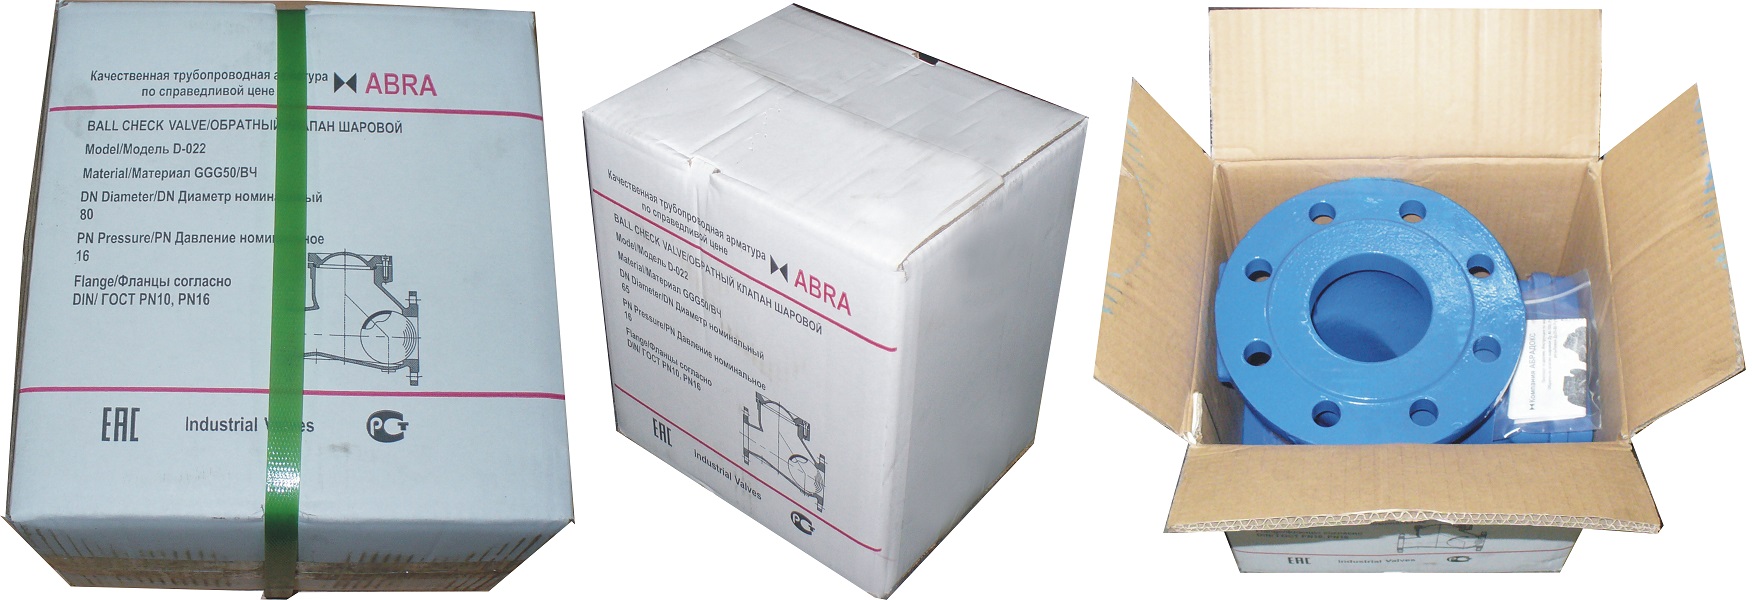 Упаковка обратных клапанов ABRA малых и средних размеров